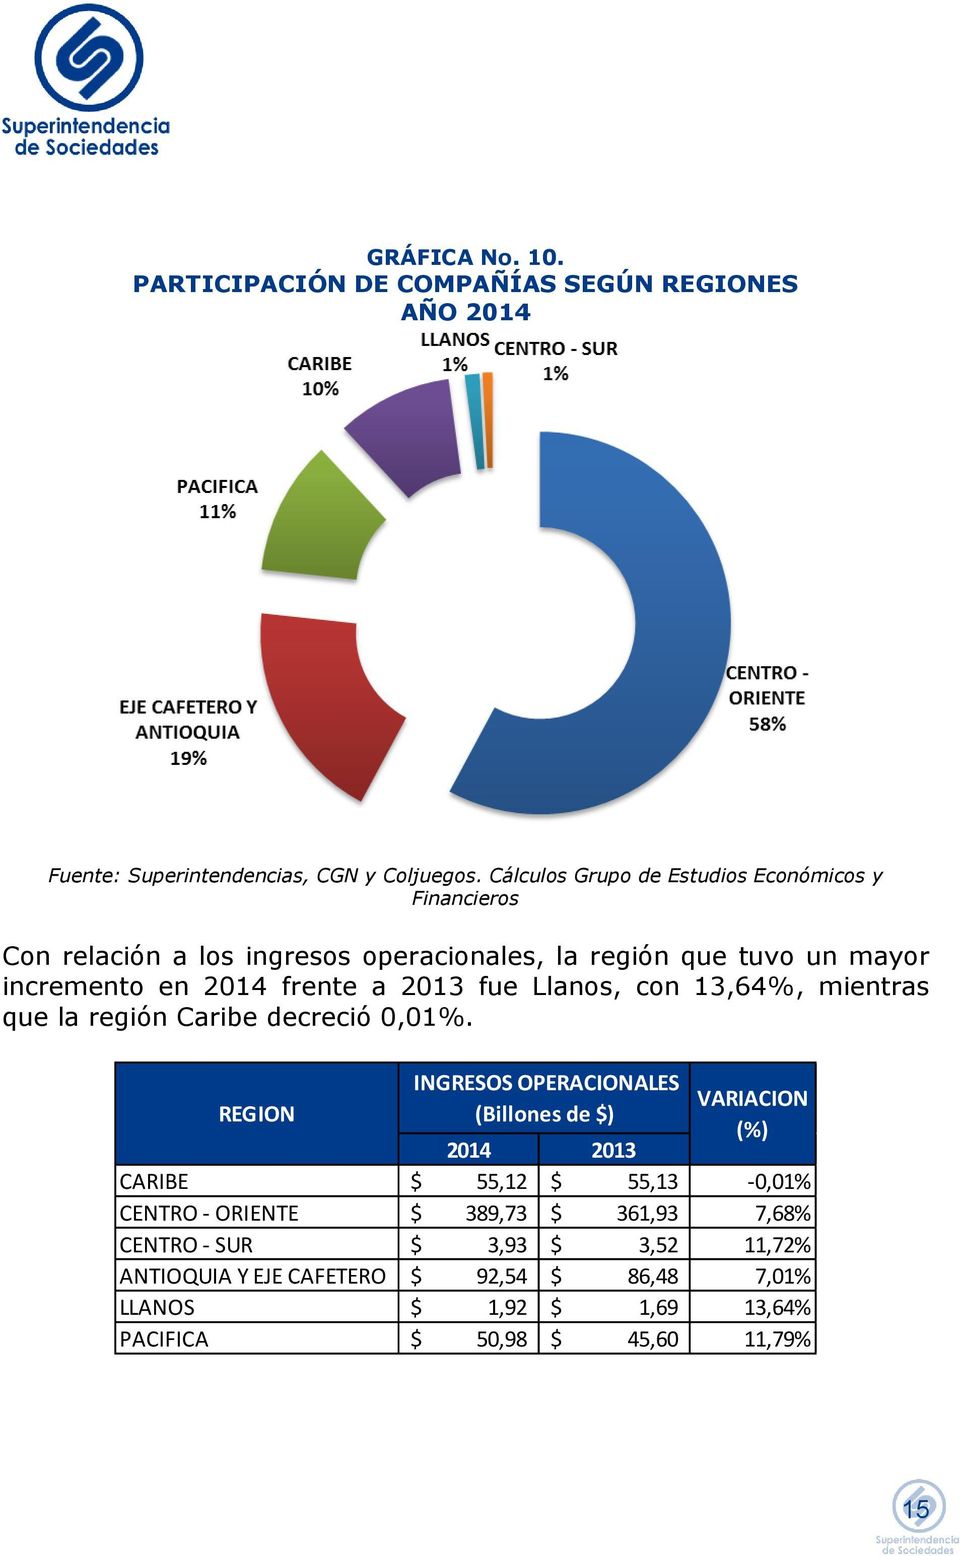 2013 fue Llanos, con 13,64%, mientras que la región Caribe decreció 0,01%.